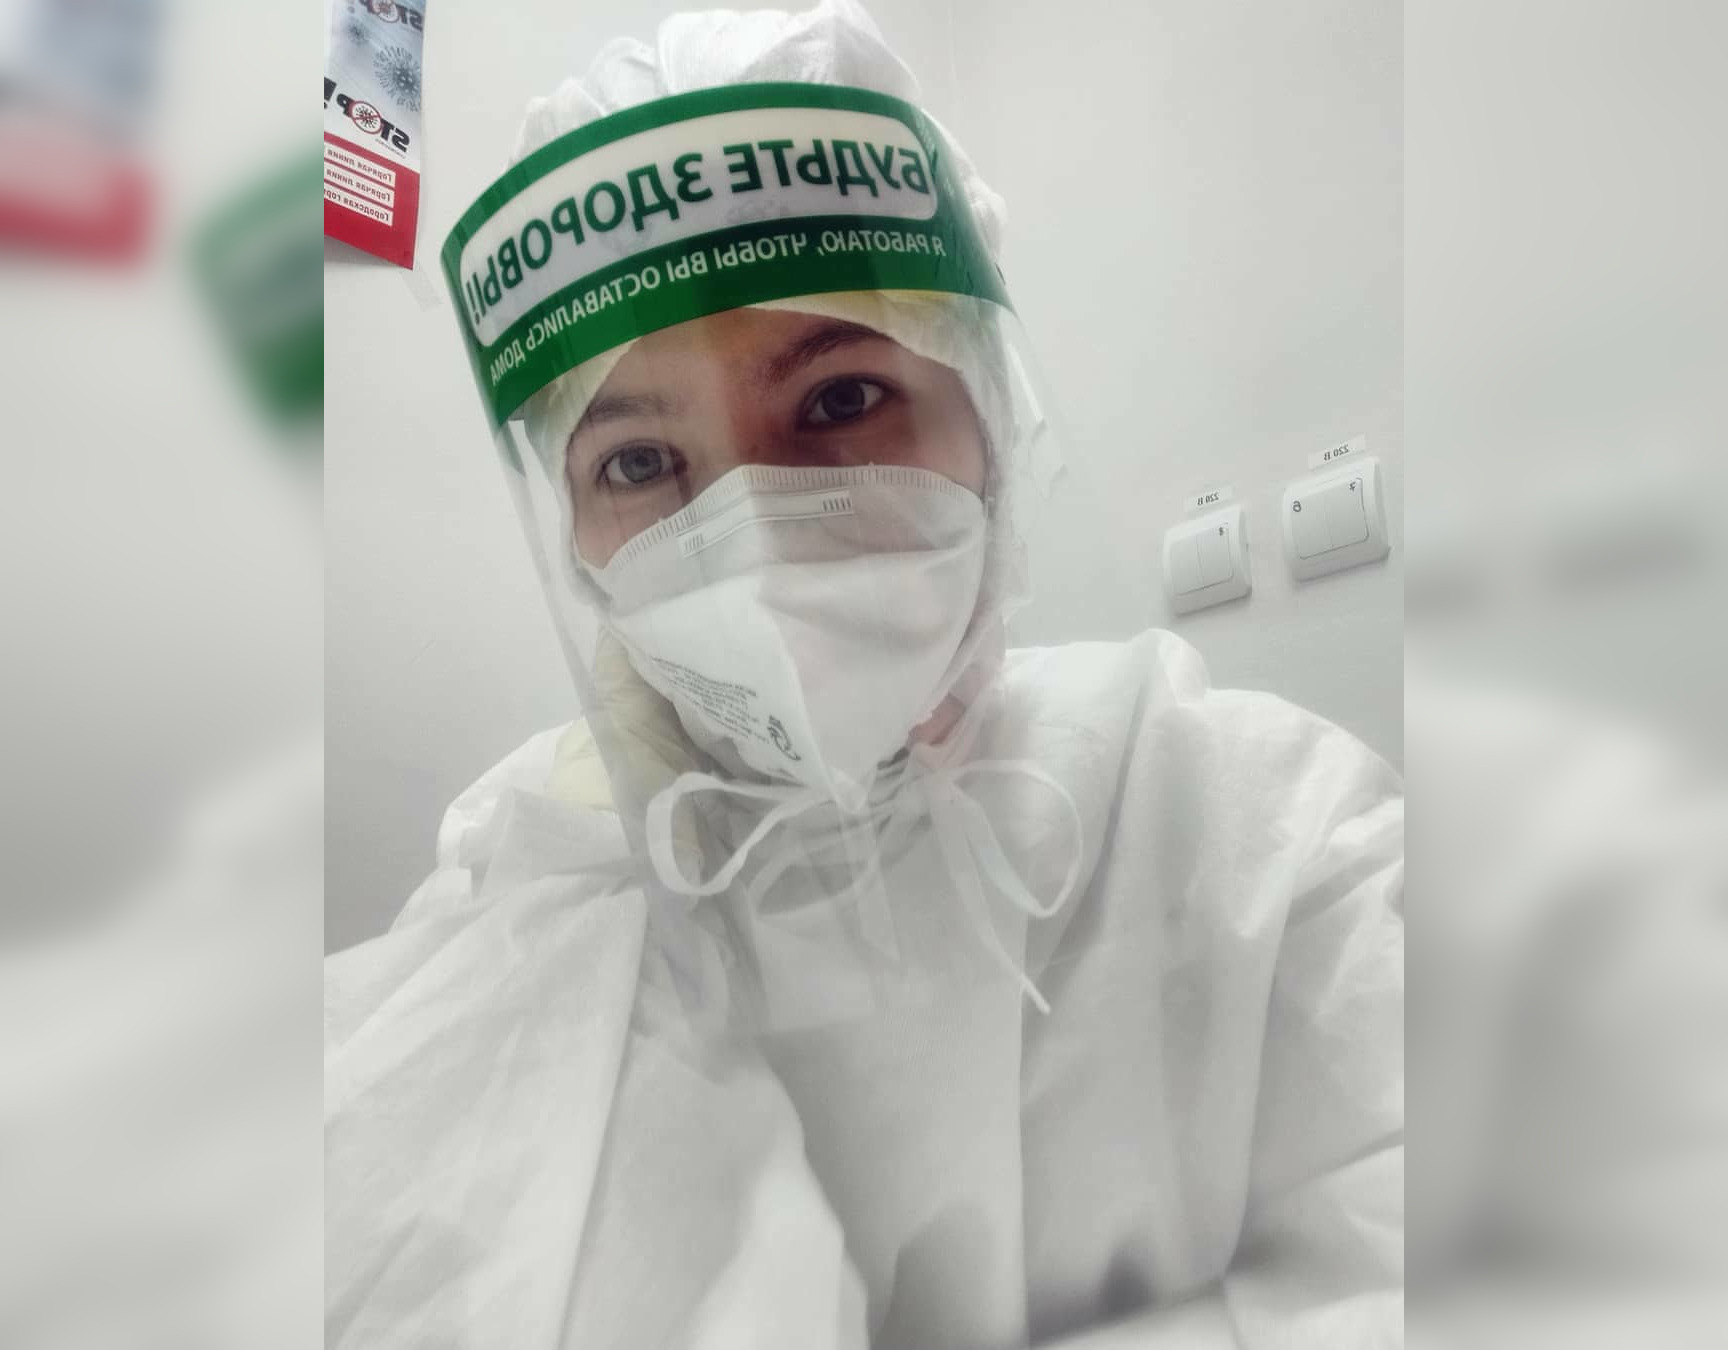 "Провожали, как на фронт": честный рассказ медсестры о работе с больными коронавирусом